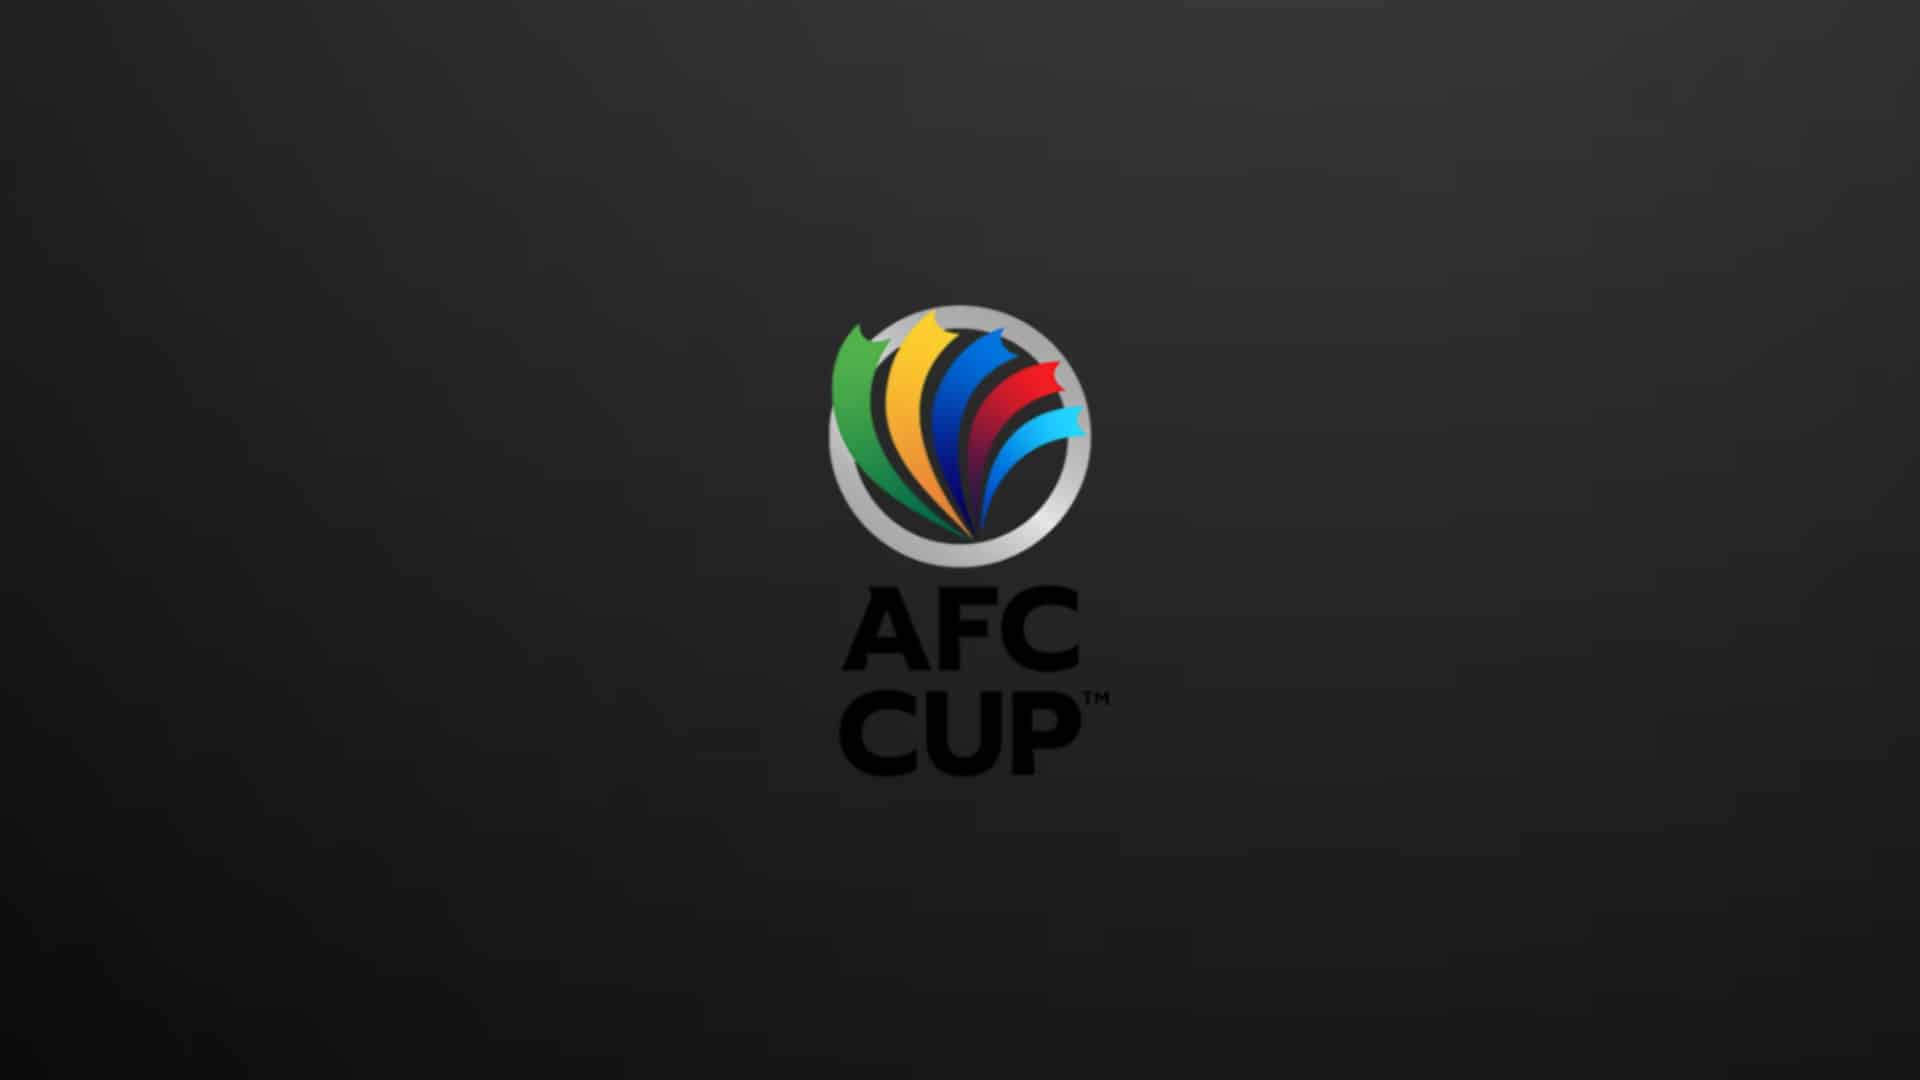   كأس الاتحاد الآسيوي: اللقب بين العهد اللبناني وسنترل الأسترالي 